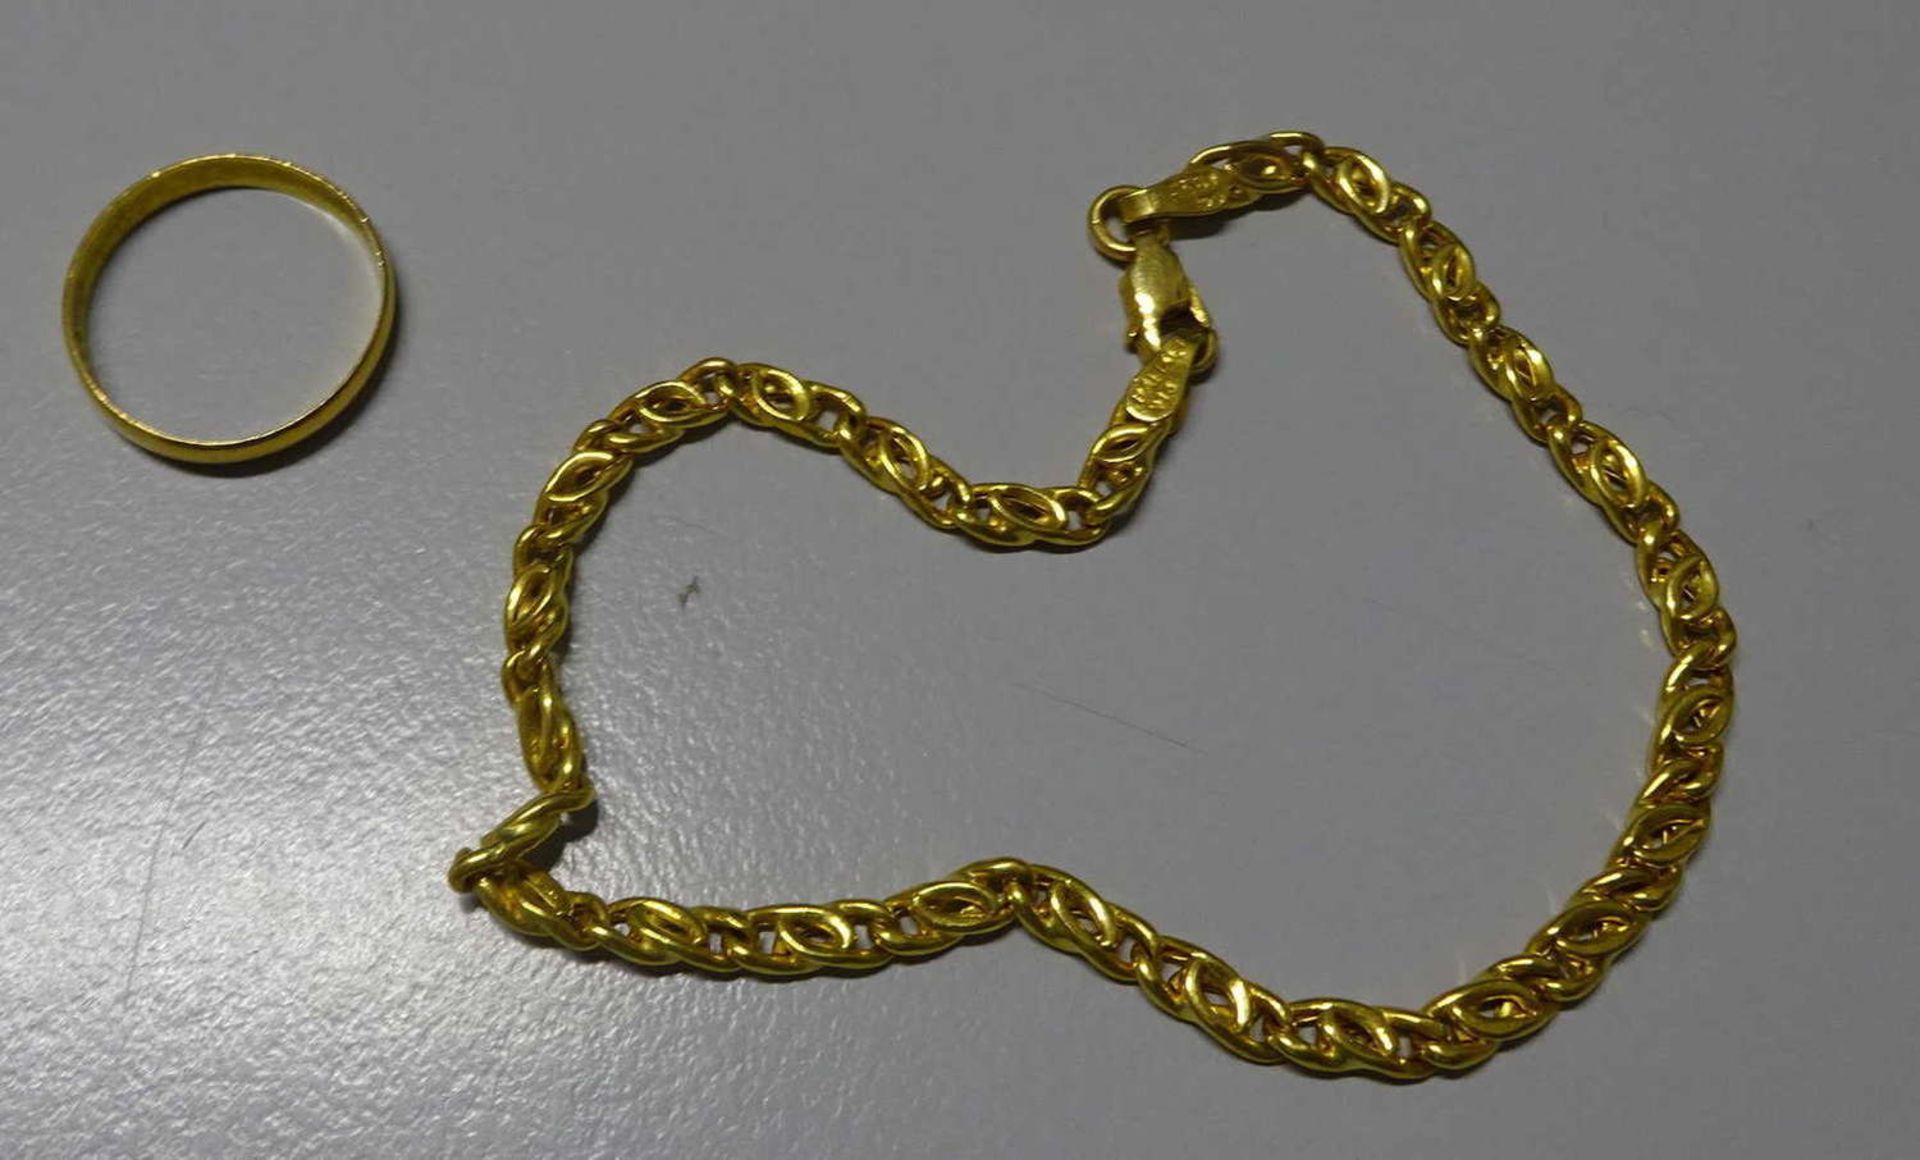 Armband, 916 Gelbgold, Länge ca 20 cm, 1 Ring 916 Gelbgold, Ringgröße ca 53, Gesamt Gewicht ca. 8,